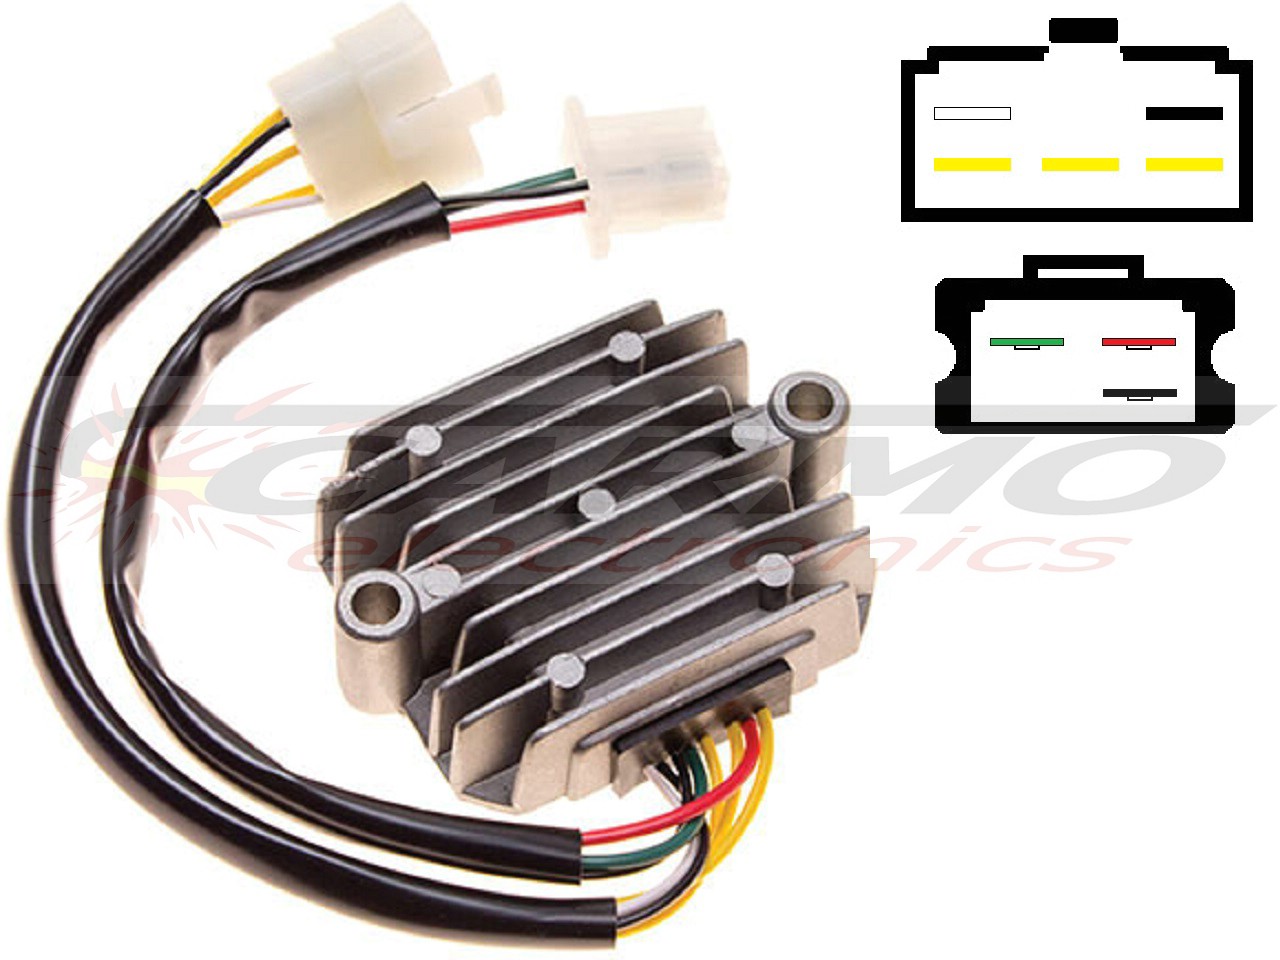 CARR211 Honda CB MOSFET Regulador de voltaje rectificador (SH234-12, SH236-12, SH236A-12, SH236B-12, SH538-12, SH255-12) - Haga click en la imagen para cerrar